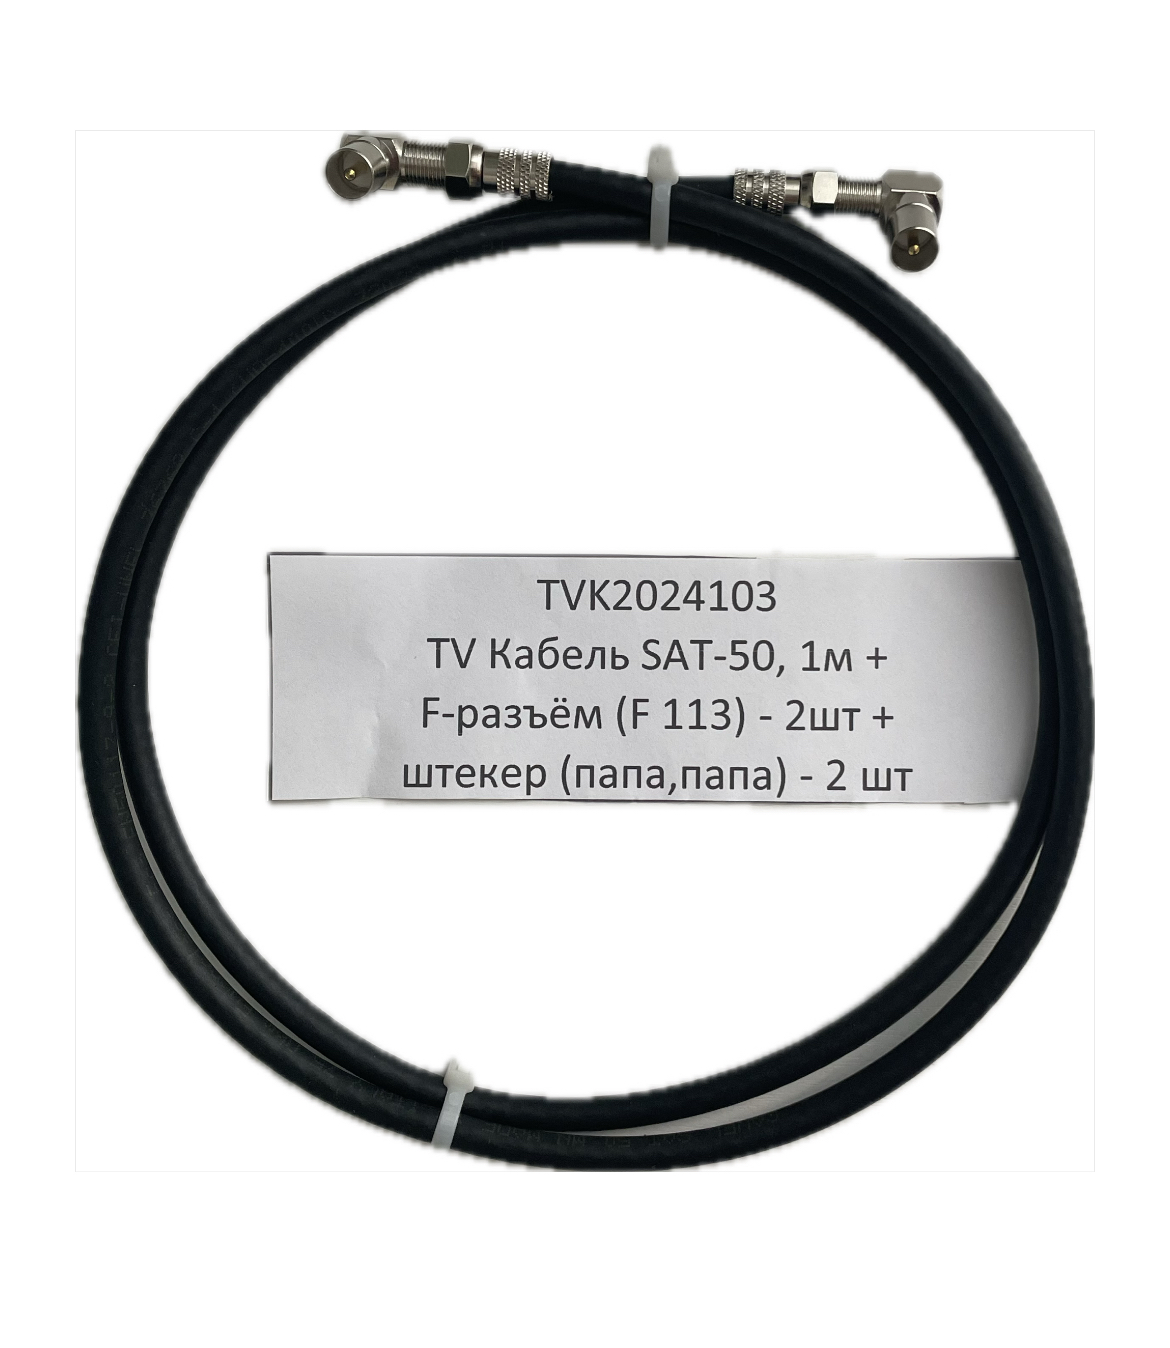 Кабель телевизионный SAT-50 TVK2024103, круглый, черный, длина кабеля 1 м